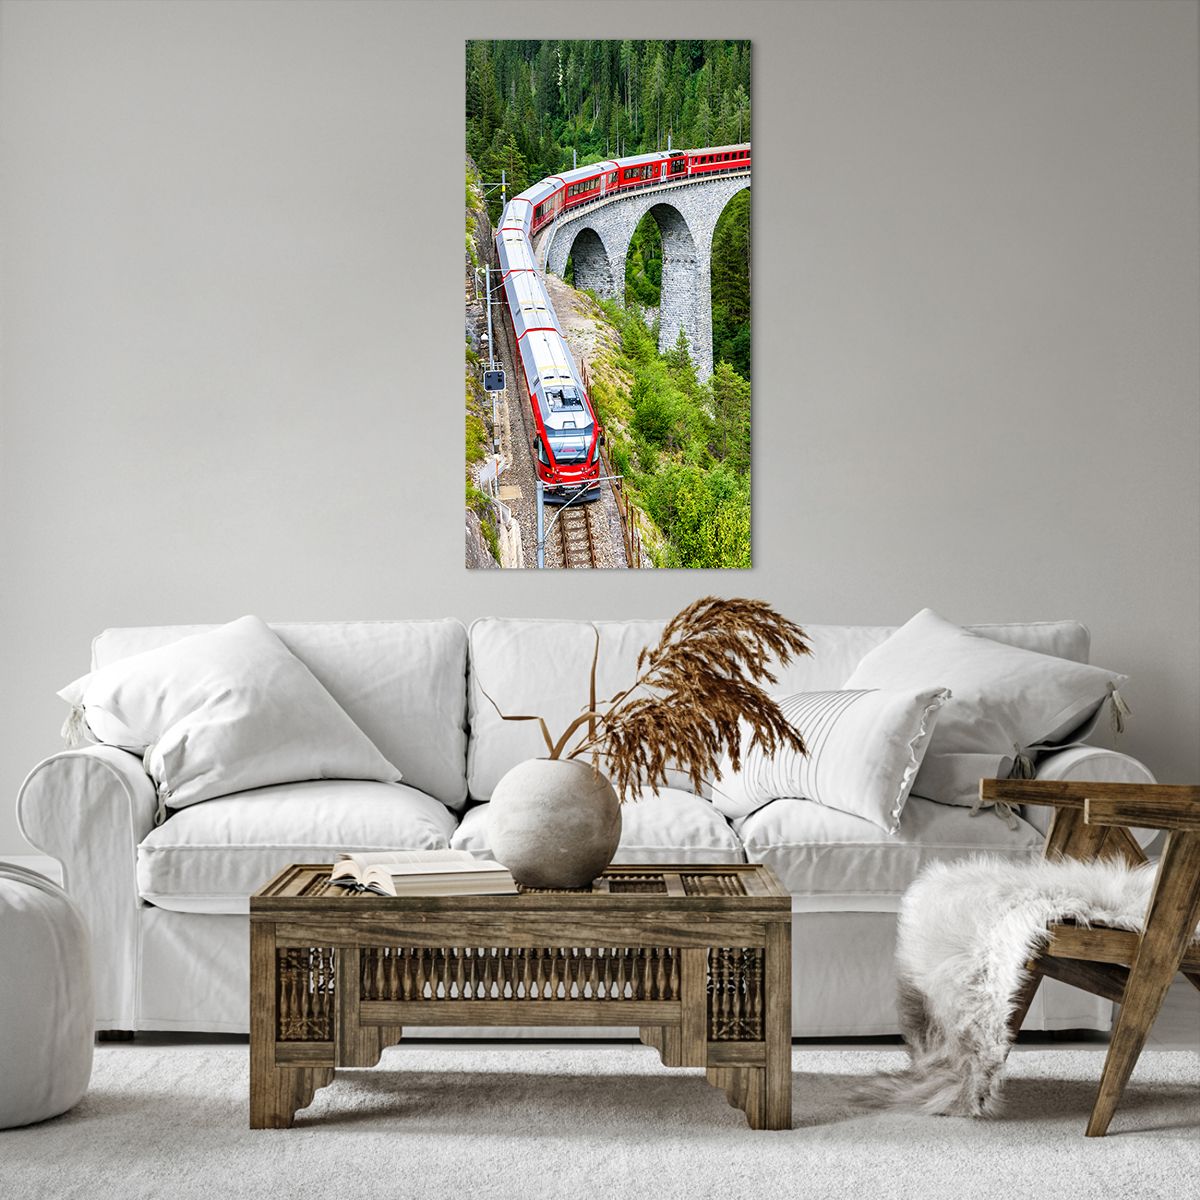 Obrazy na płótnie Most Kolejowy, Obrazy na płótnie Krajobraz Górski, Obrazy na płótnie Pociąg Pasażerski, Obrazy na płótnie Góry, Obrazy na płótnie Alpy